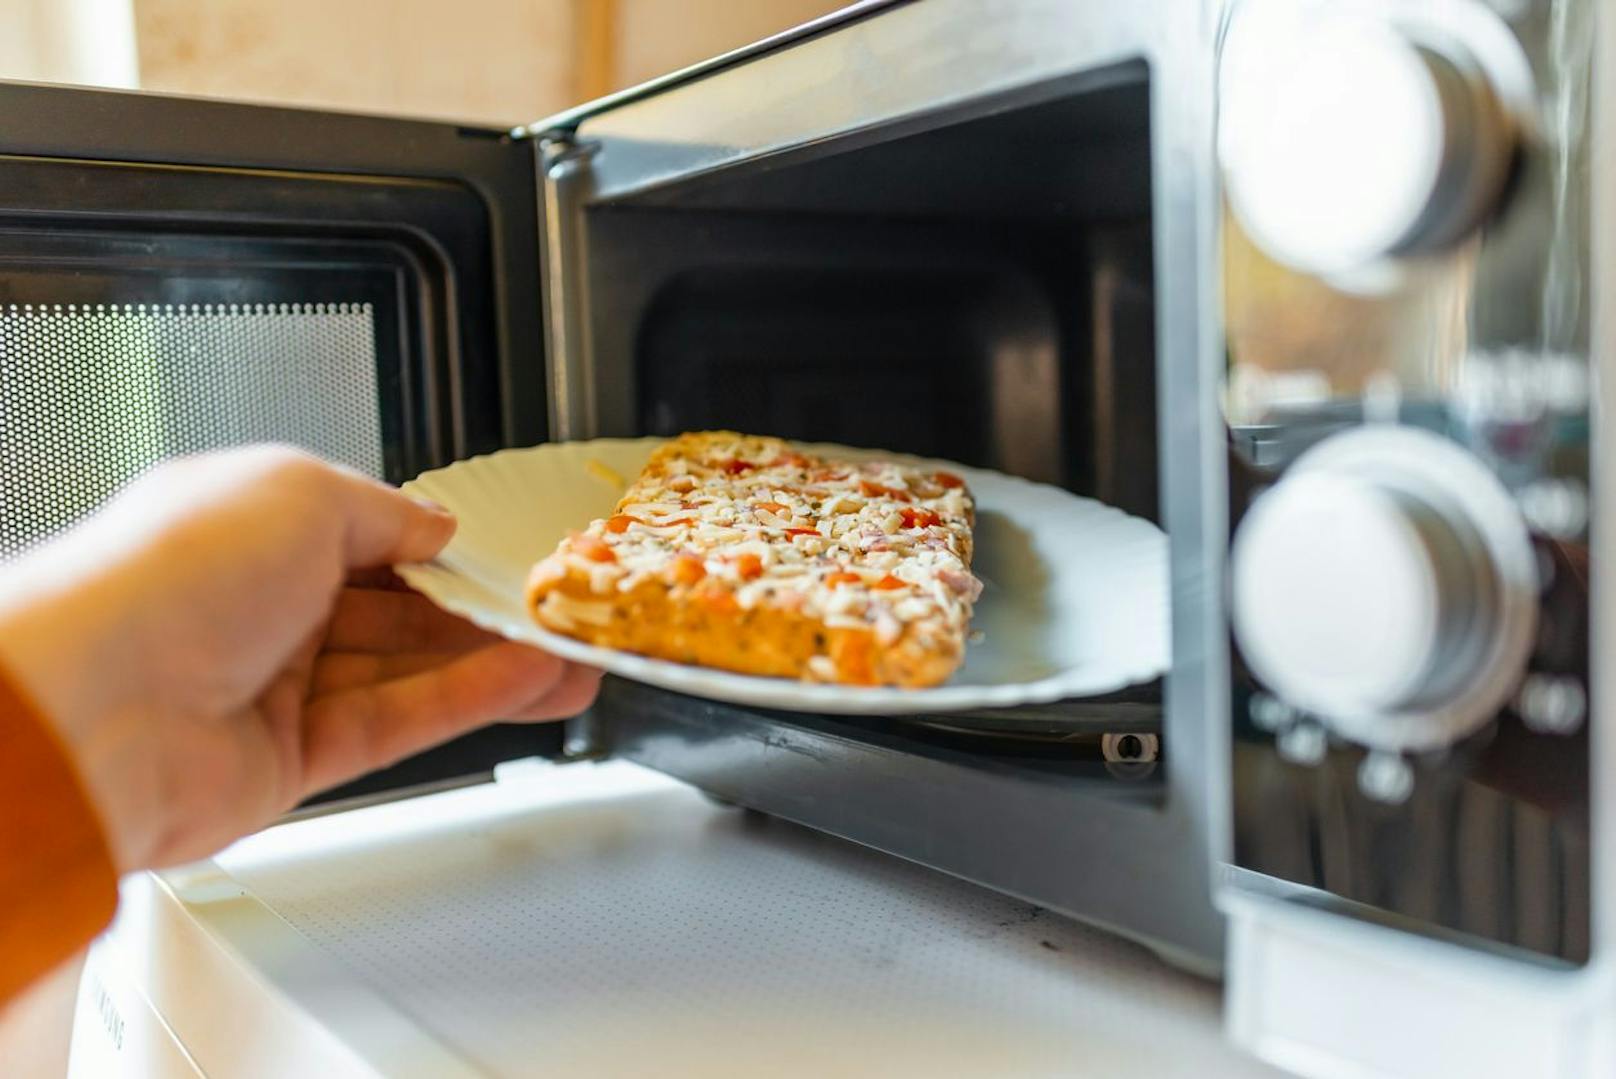 <strong>Die Pizza vom Vorabend:</strong>&nbsp;Wer&nbsp;nicht so auf kalte Pizza vor Vorabend steht, sollte sie aber besser nicht in der Mikrowelle aufwärmen. Denn die macht aus deinem Stück eine weich-wabbelige Angelegenheit. Lieber noch mal im heißen Ofen aufbacken, damit sie knusprig bleibt. Auch bei Gebäck solltest du aus diesem Grund lieber den Ofen nutzen.&nbsp;